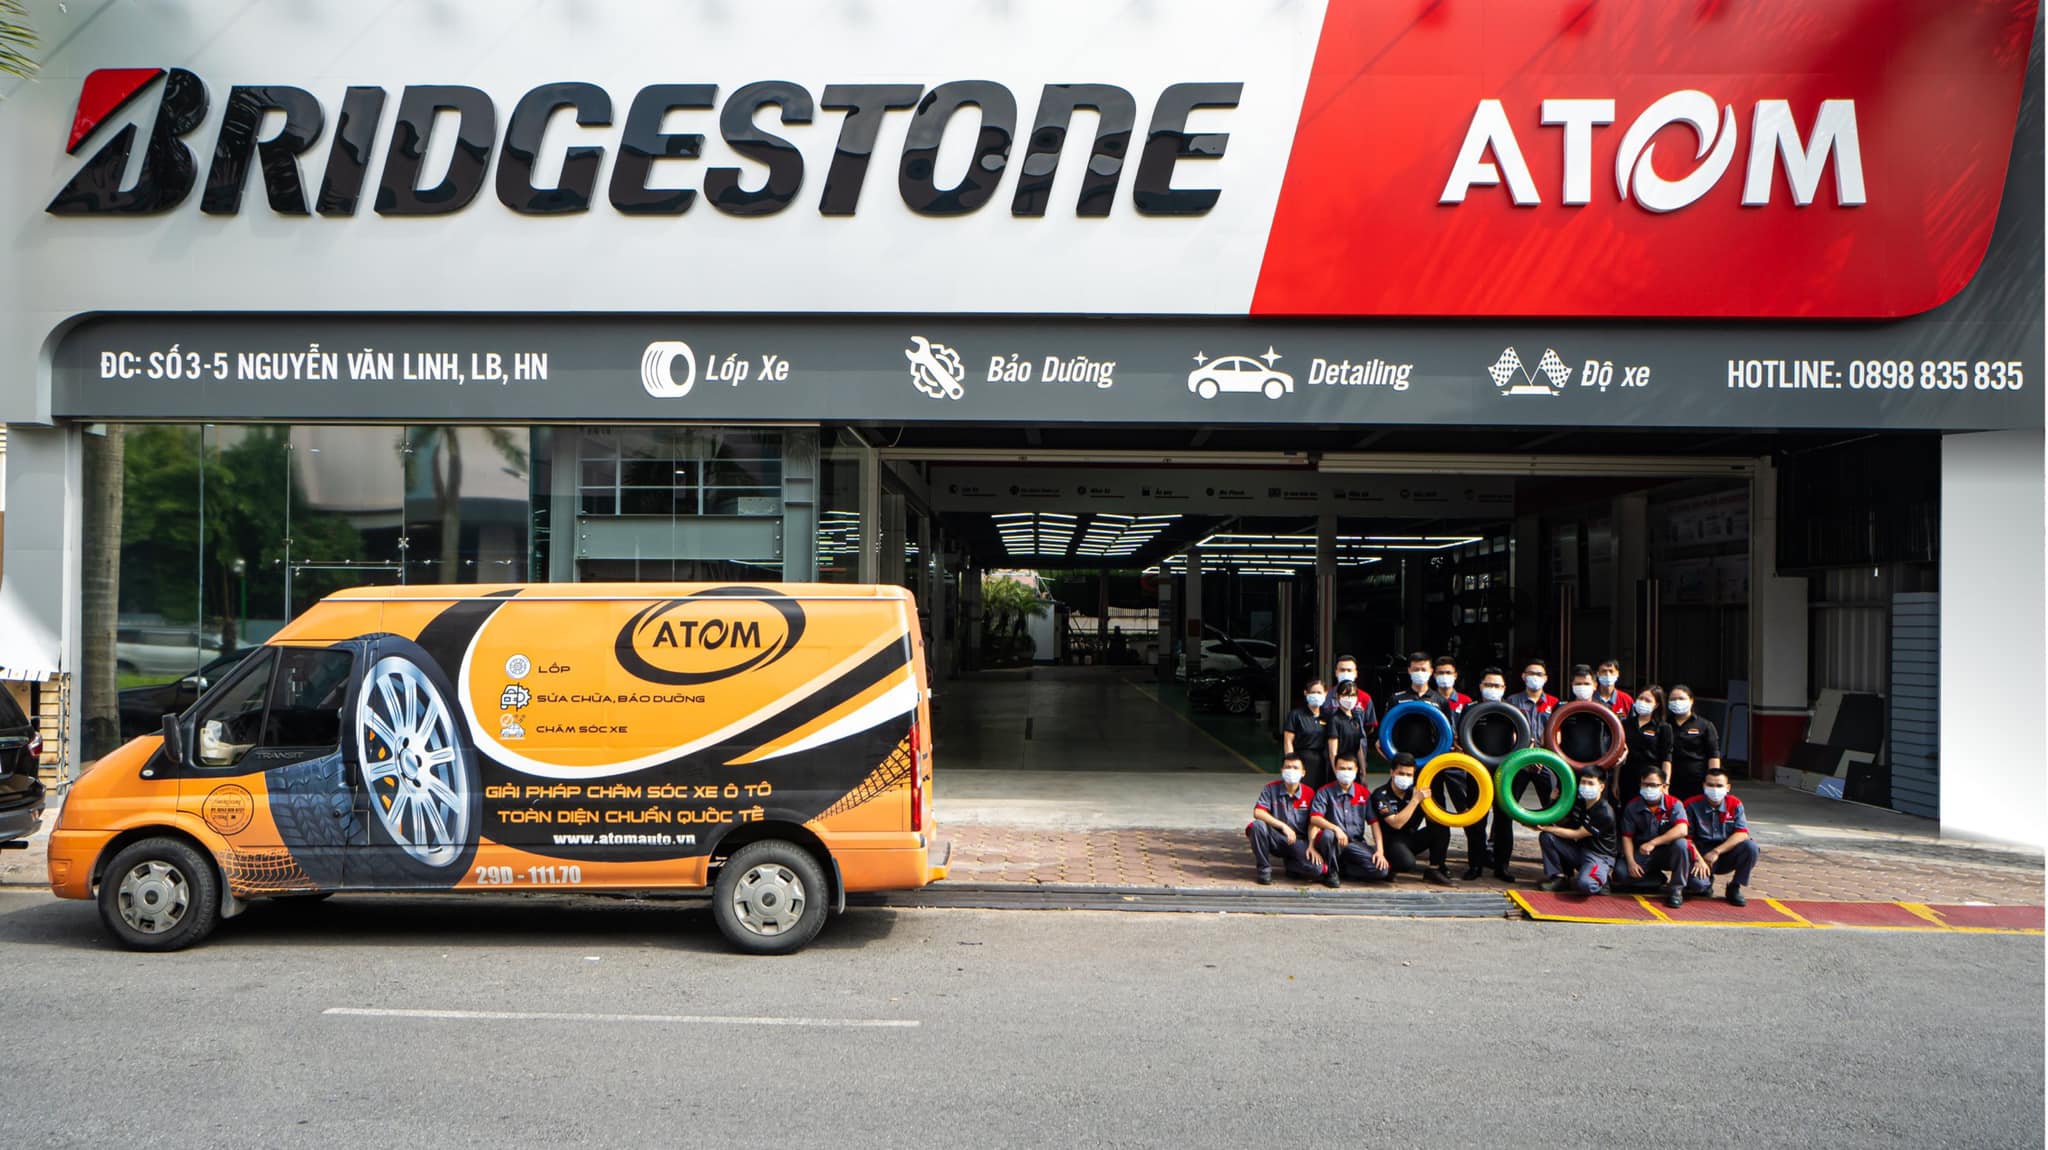 ATOM - Bridgestone Premium Auto Services ảnh 1